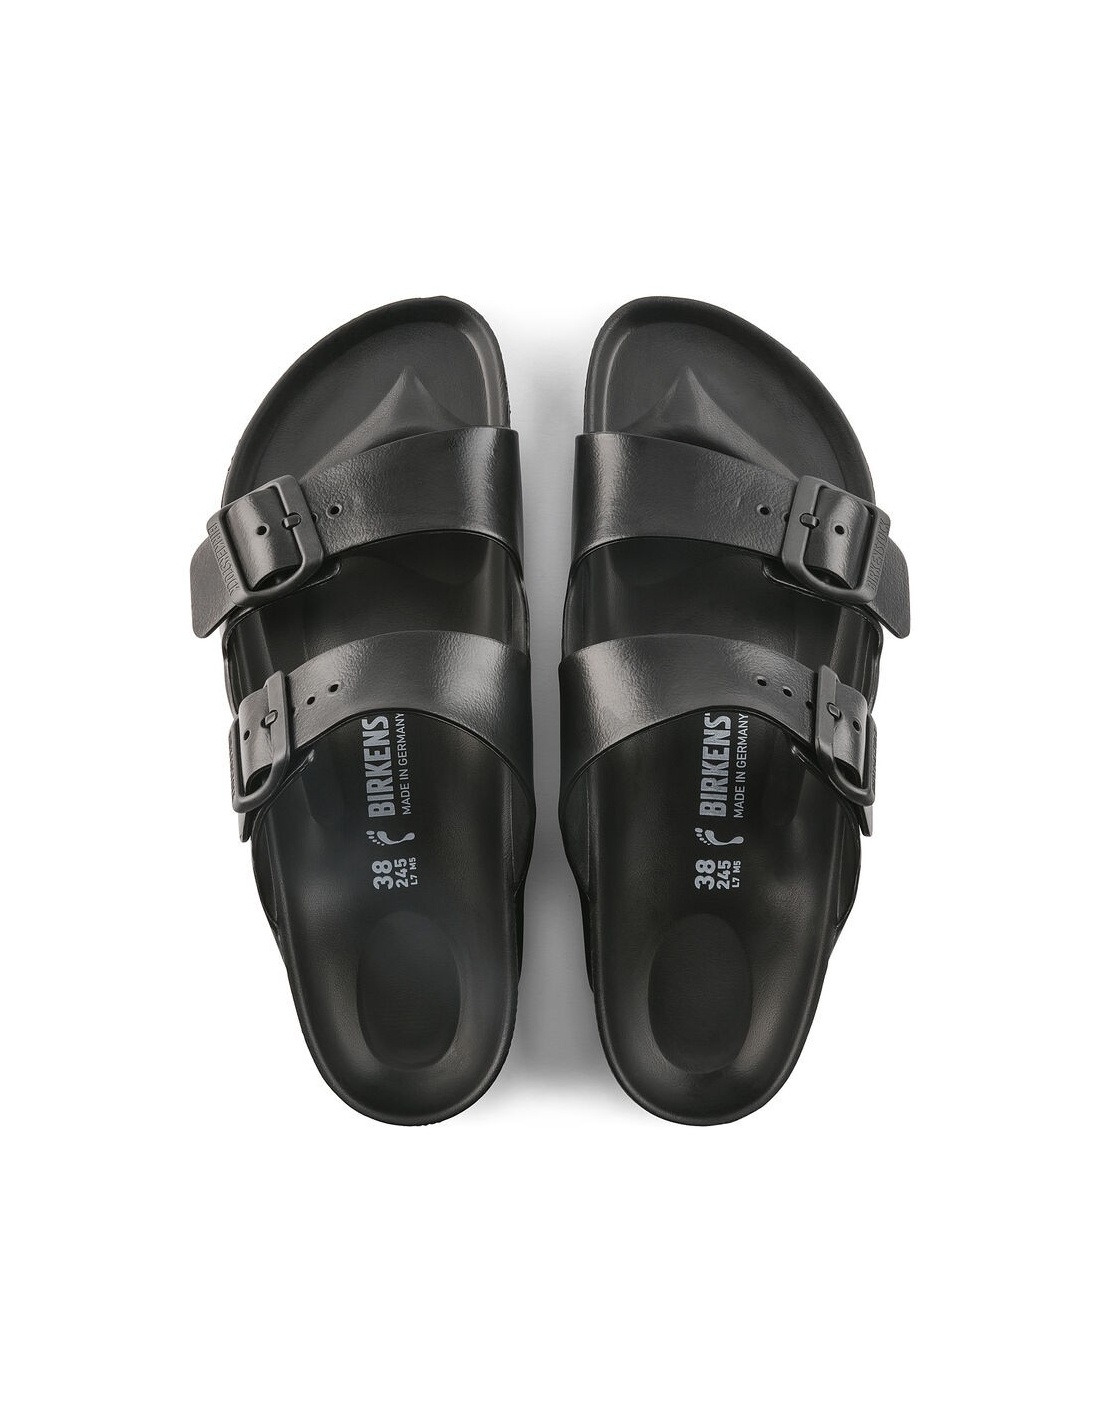 EVA Sandals | Black Narrow Fit